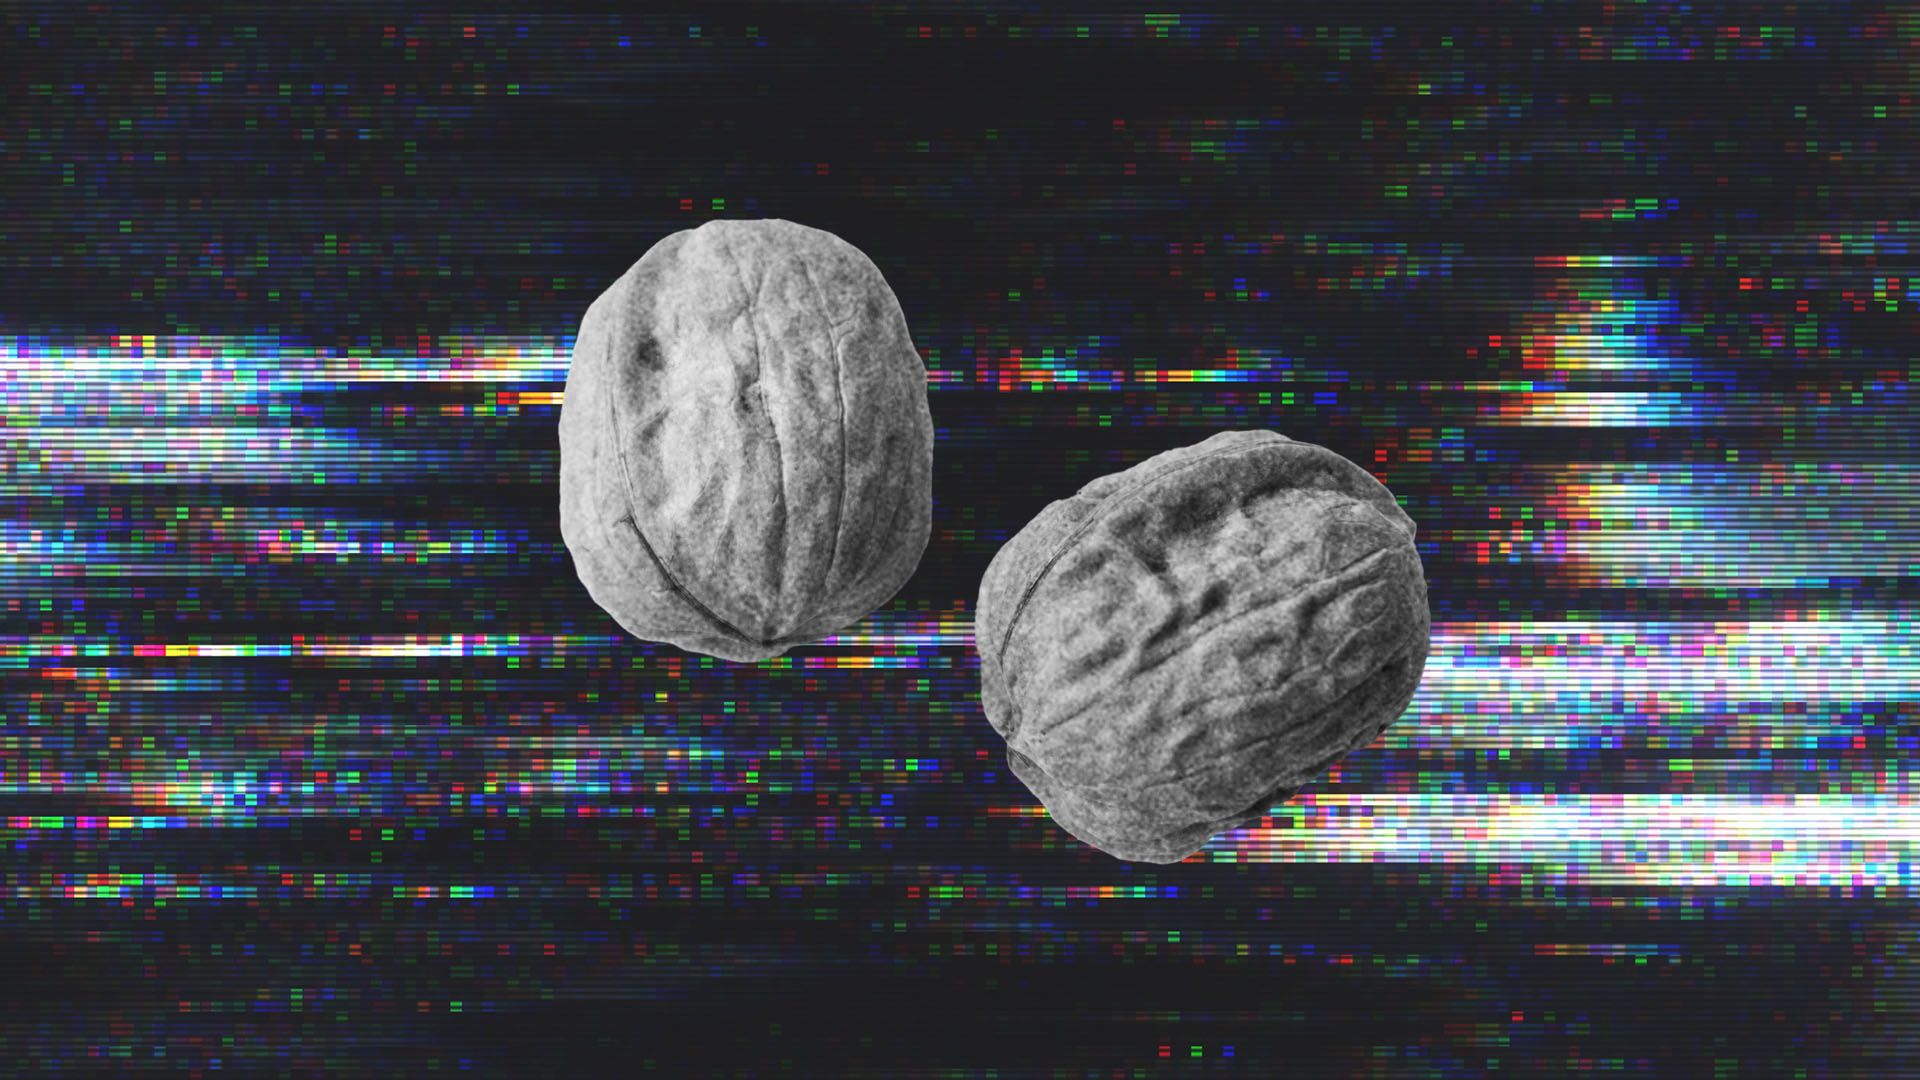 Two walnuts.